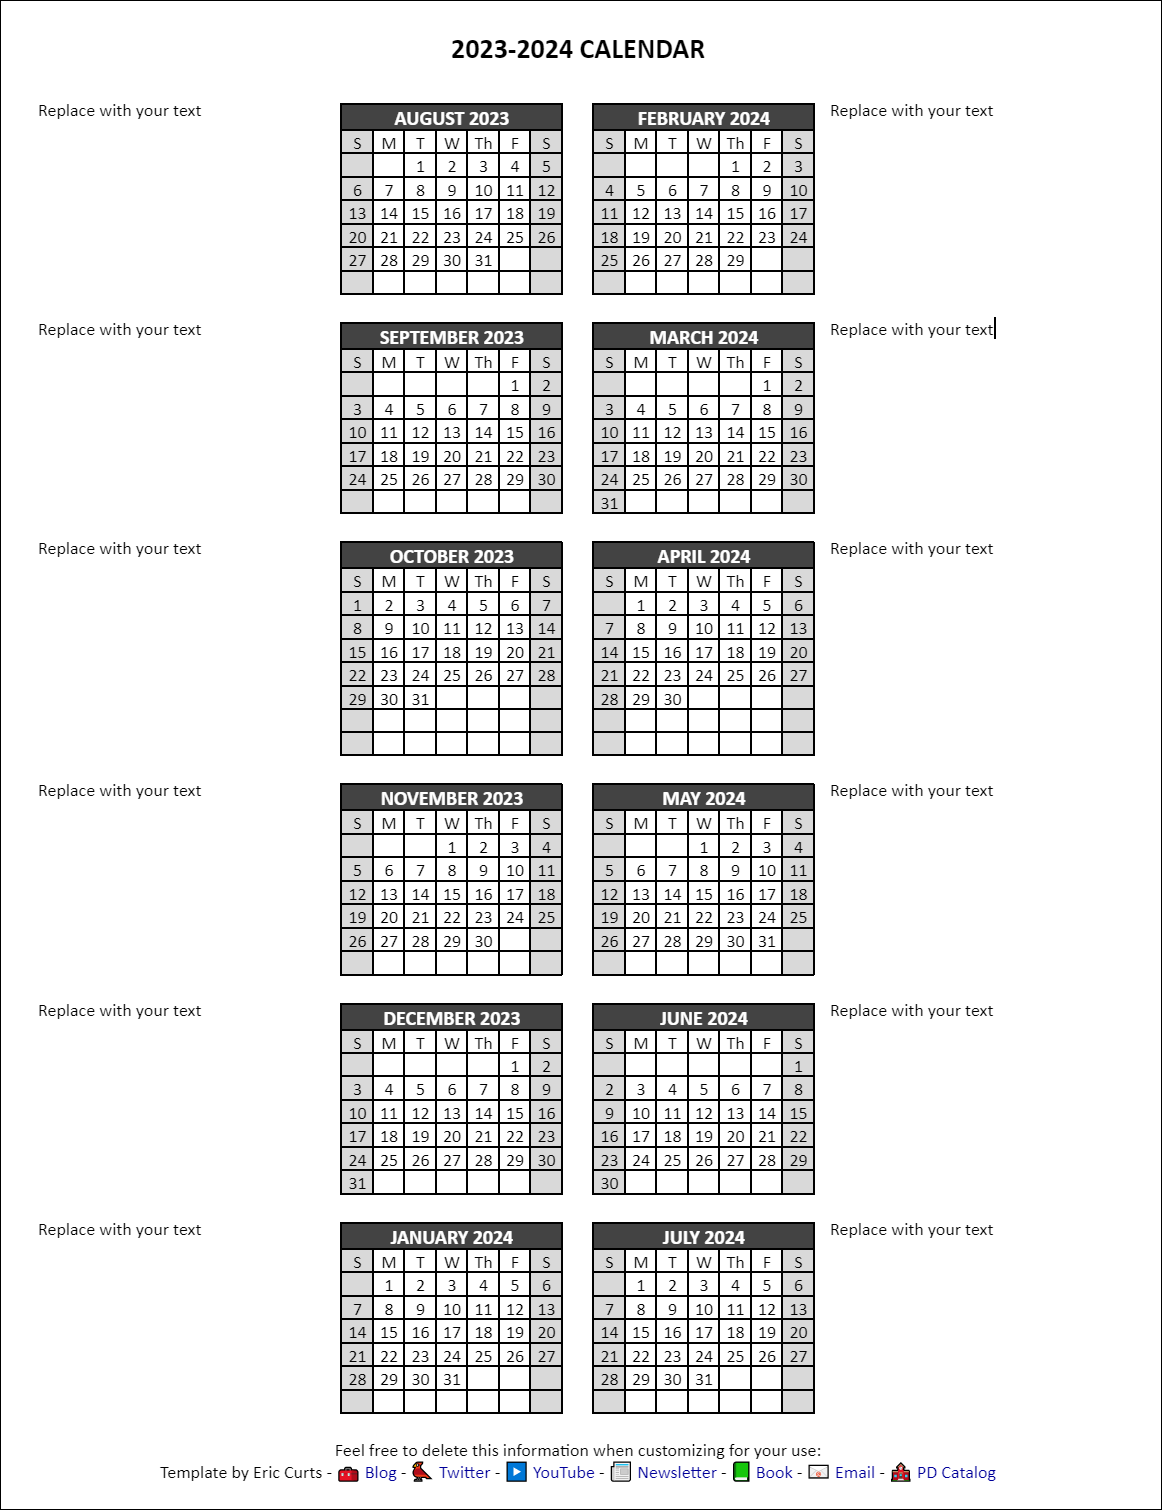 Control Alt Achieve Google Docs Calendar Templates for the 20232024